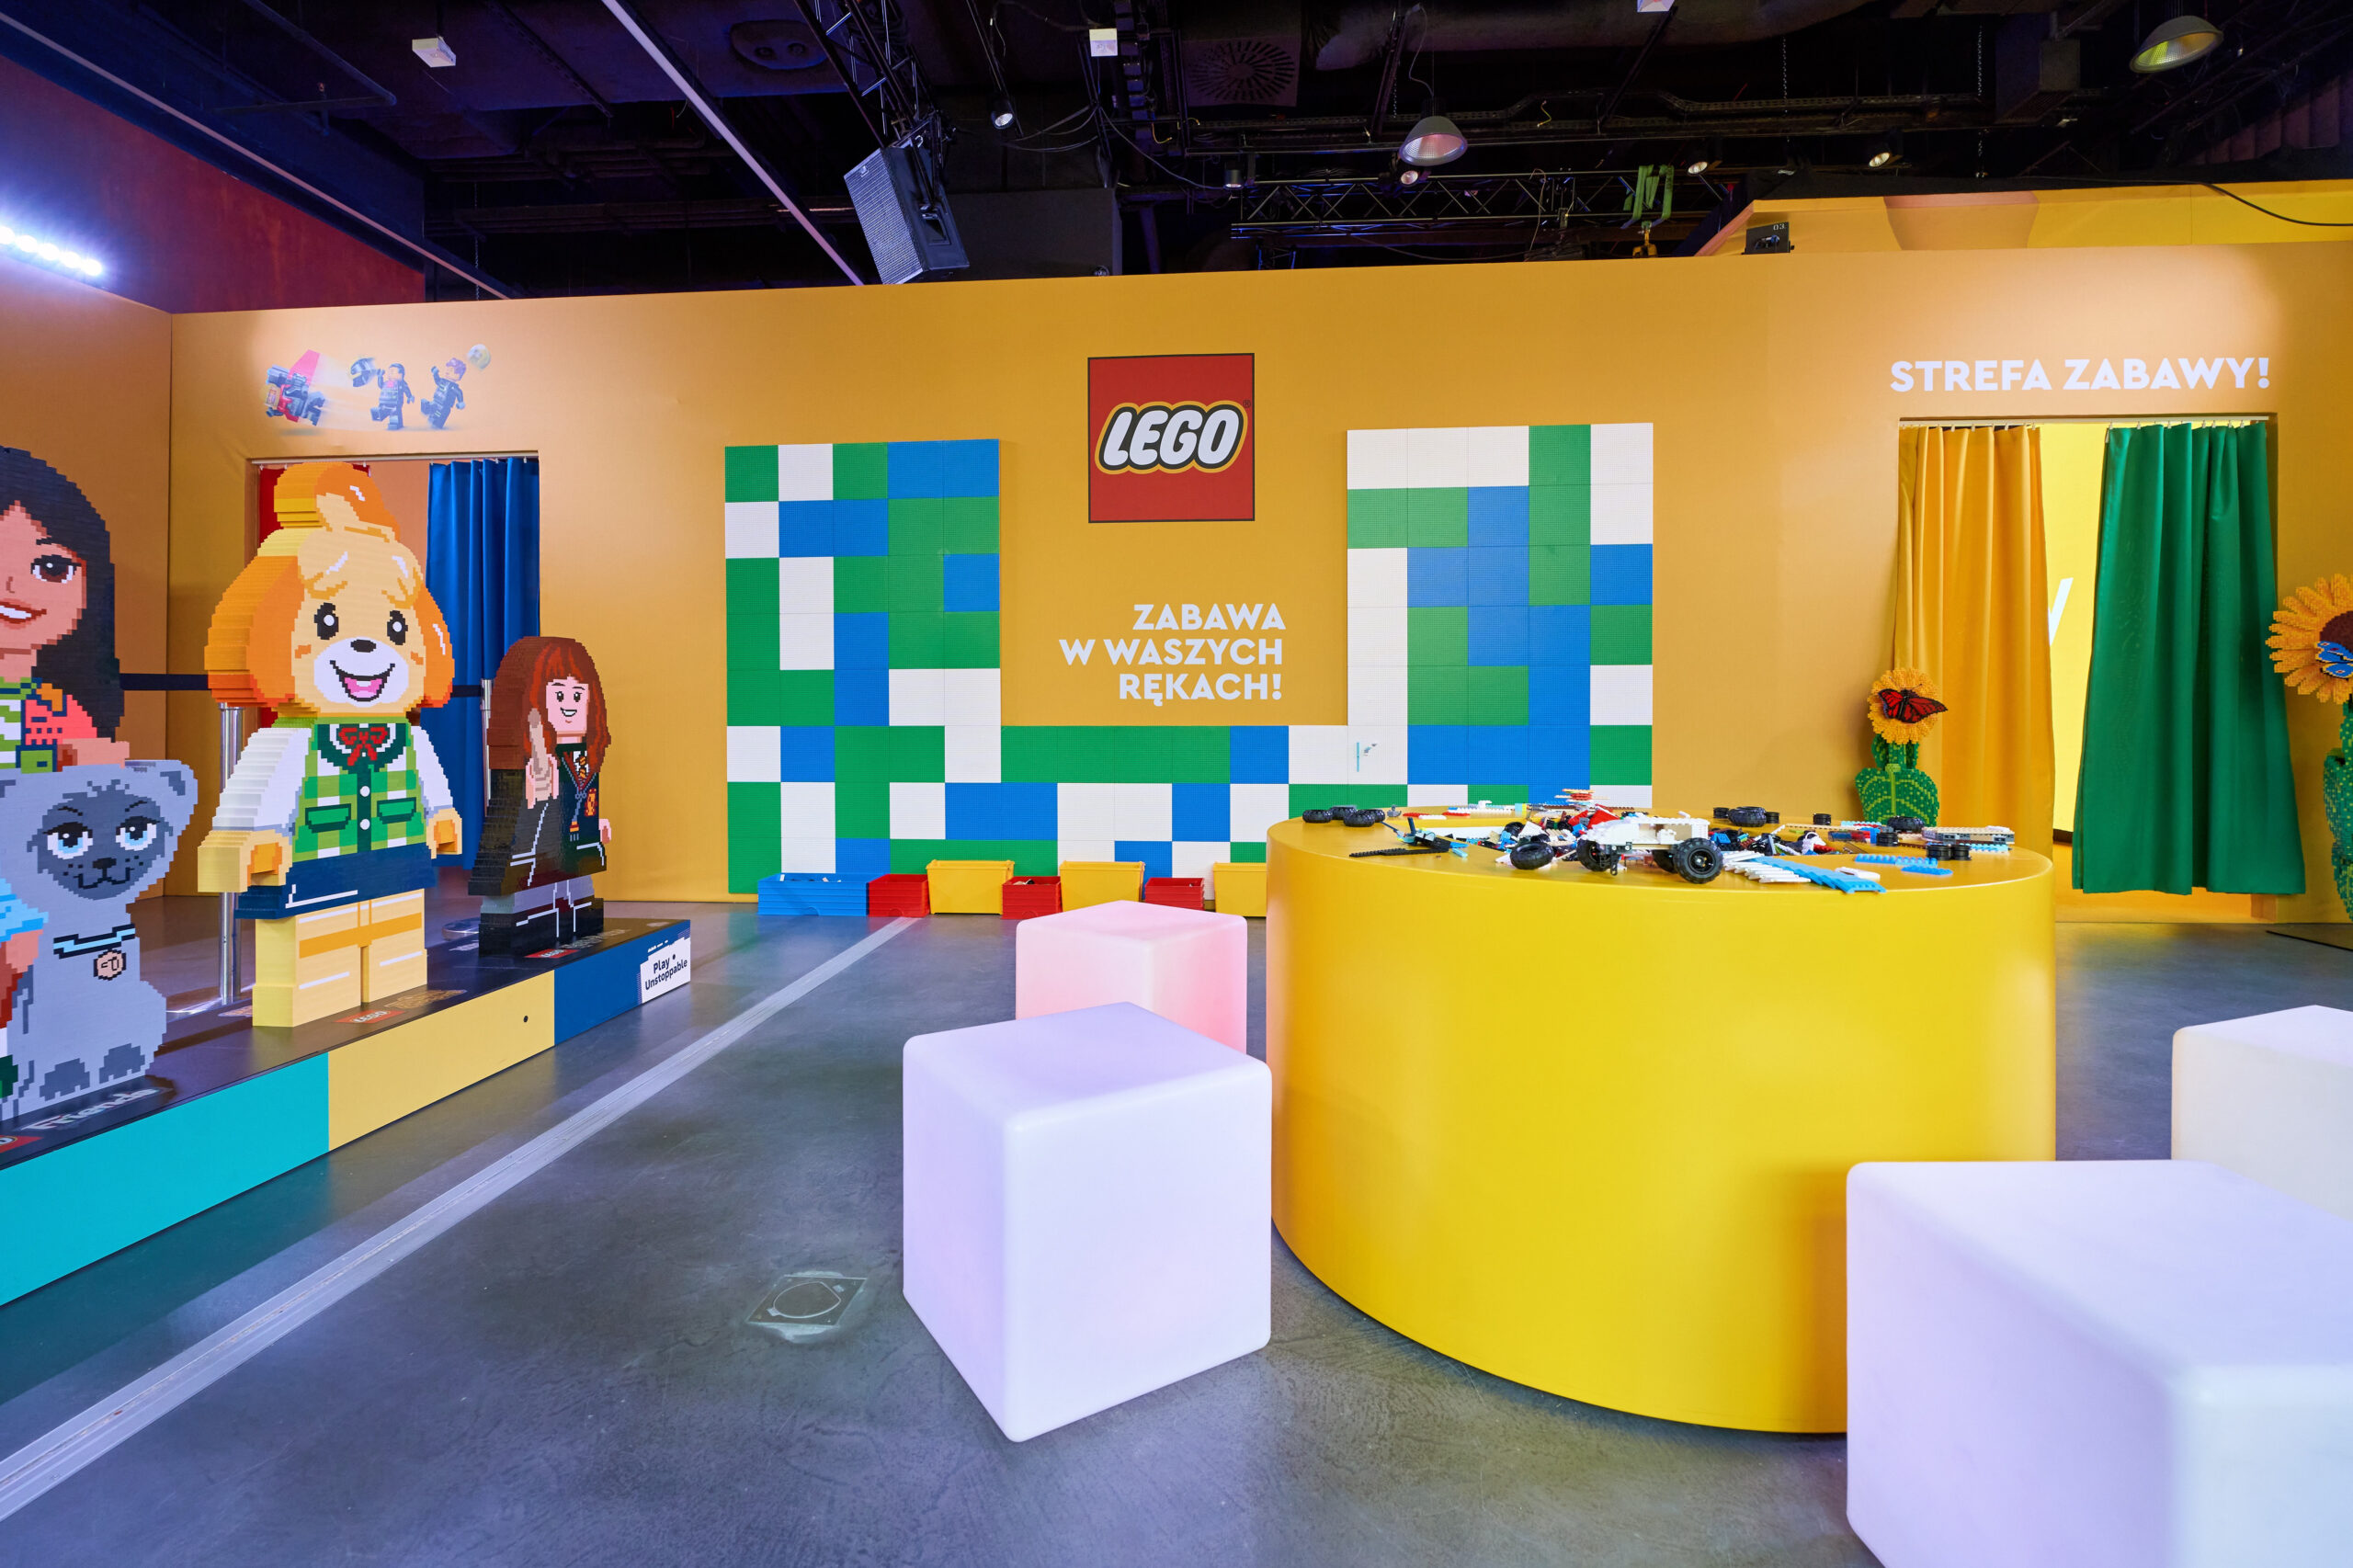 Strefa Zabawy Lego